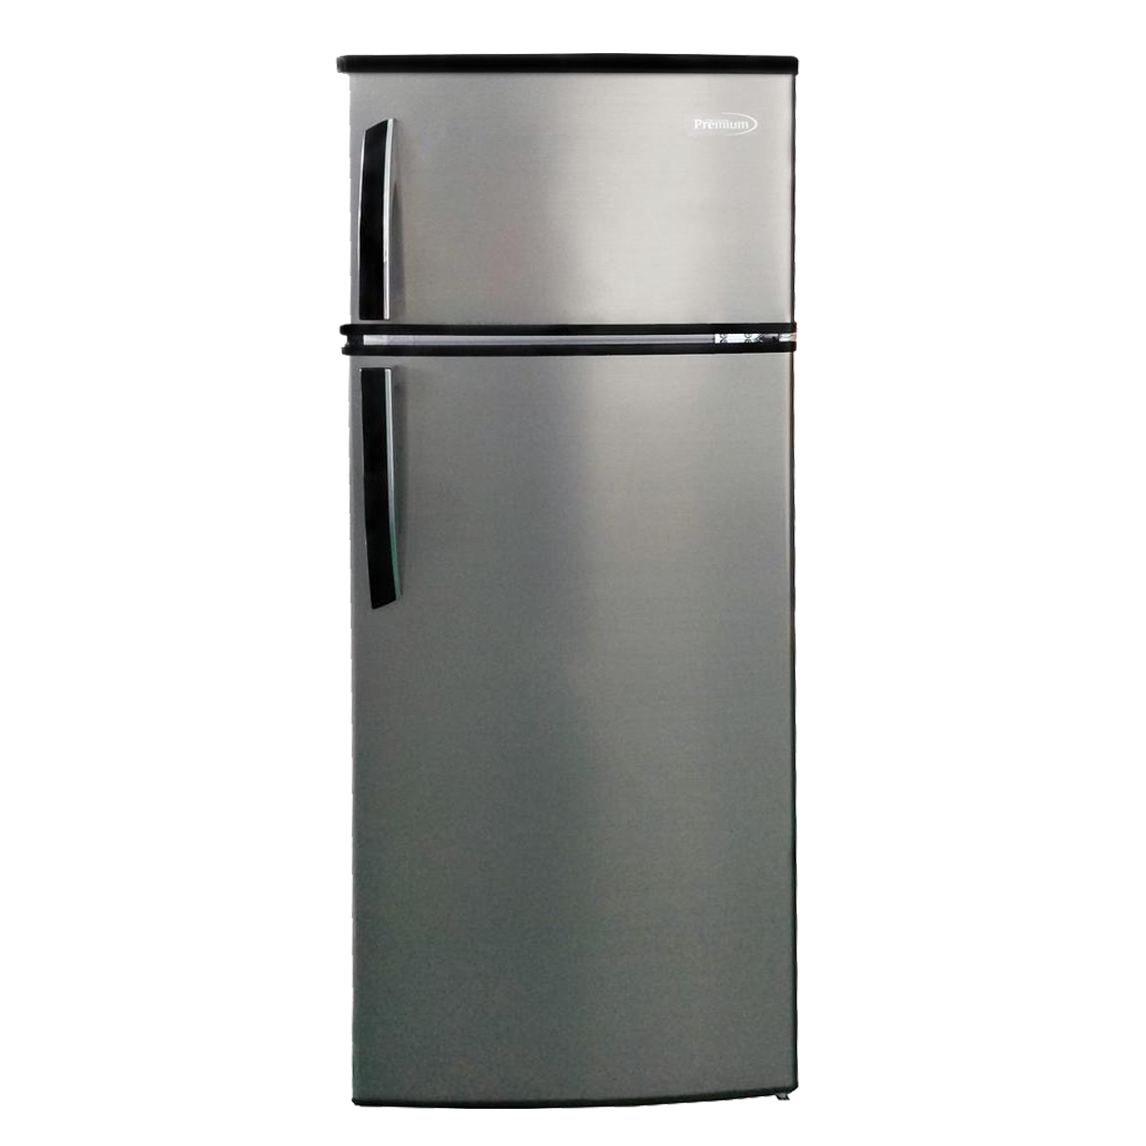 Premium 7.4 Cu Ft Top Freezer Compact Refrigerator Color Silver Glass Shelves